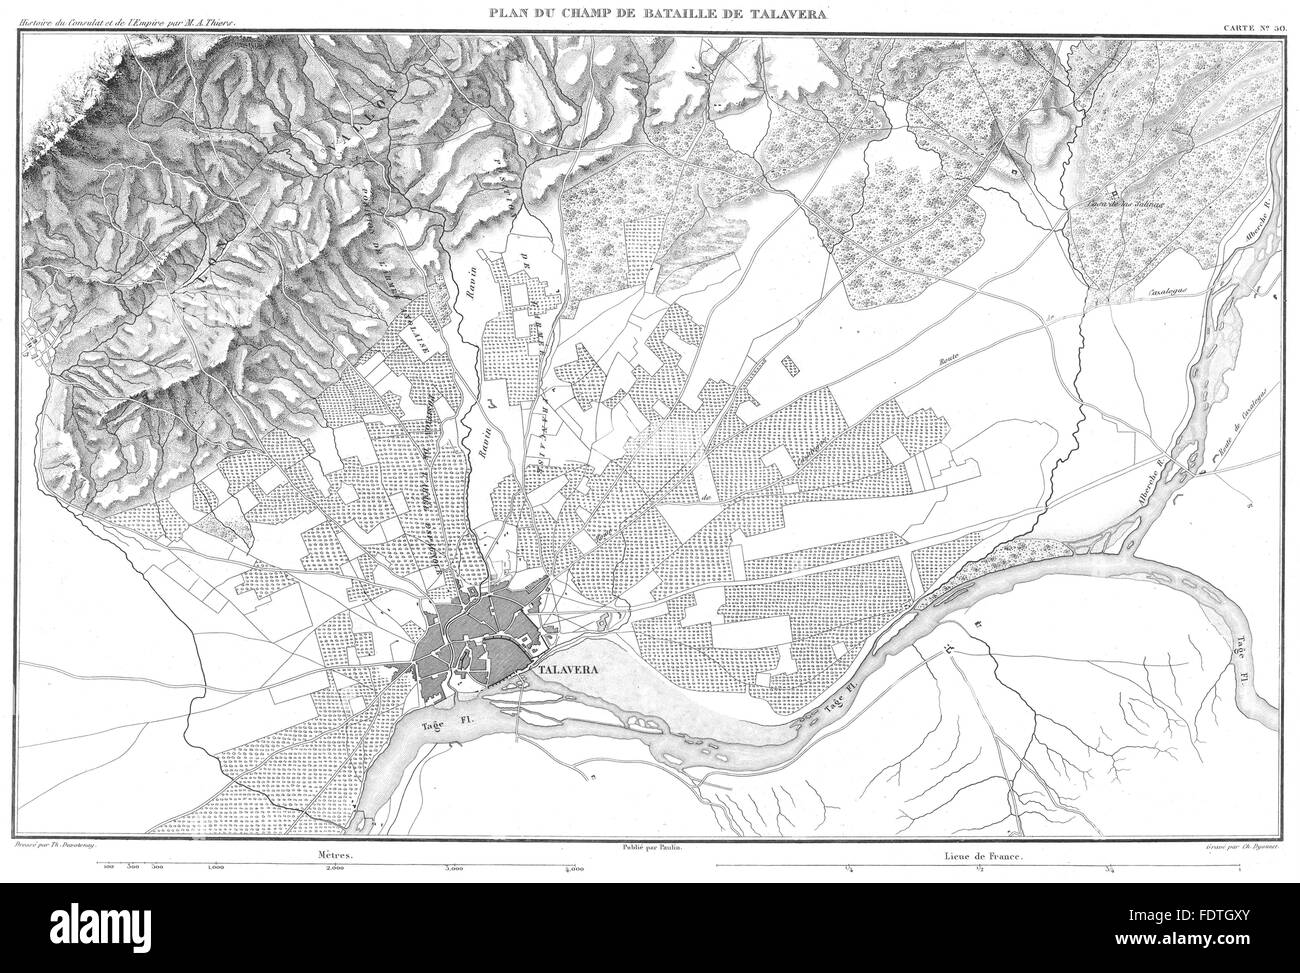 España: Plan du champ de Bataille de Talavera 1809, 1859 mapa antiguo Foto de stock